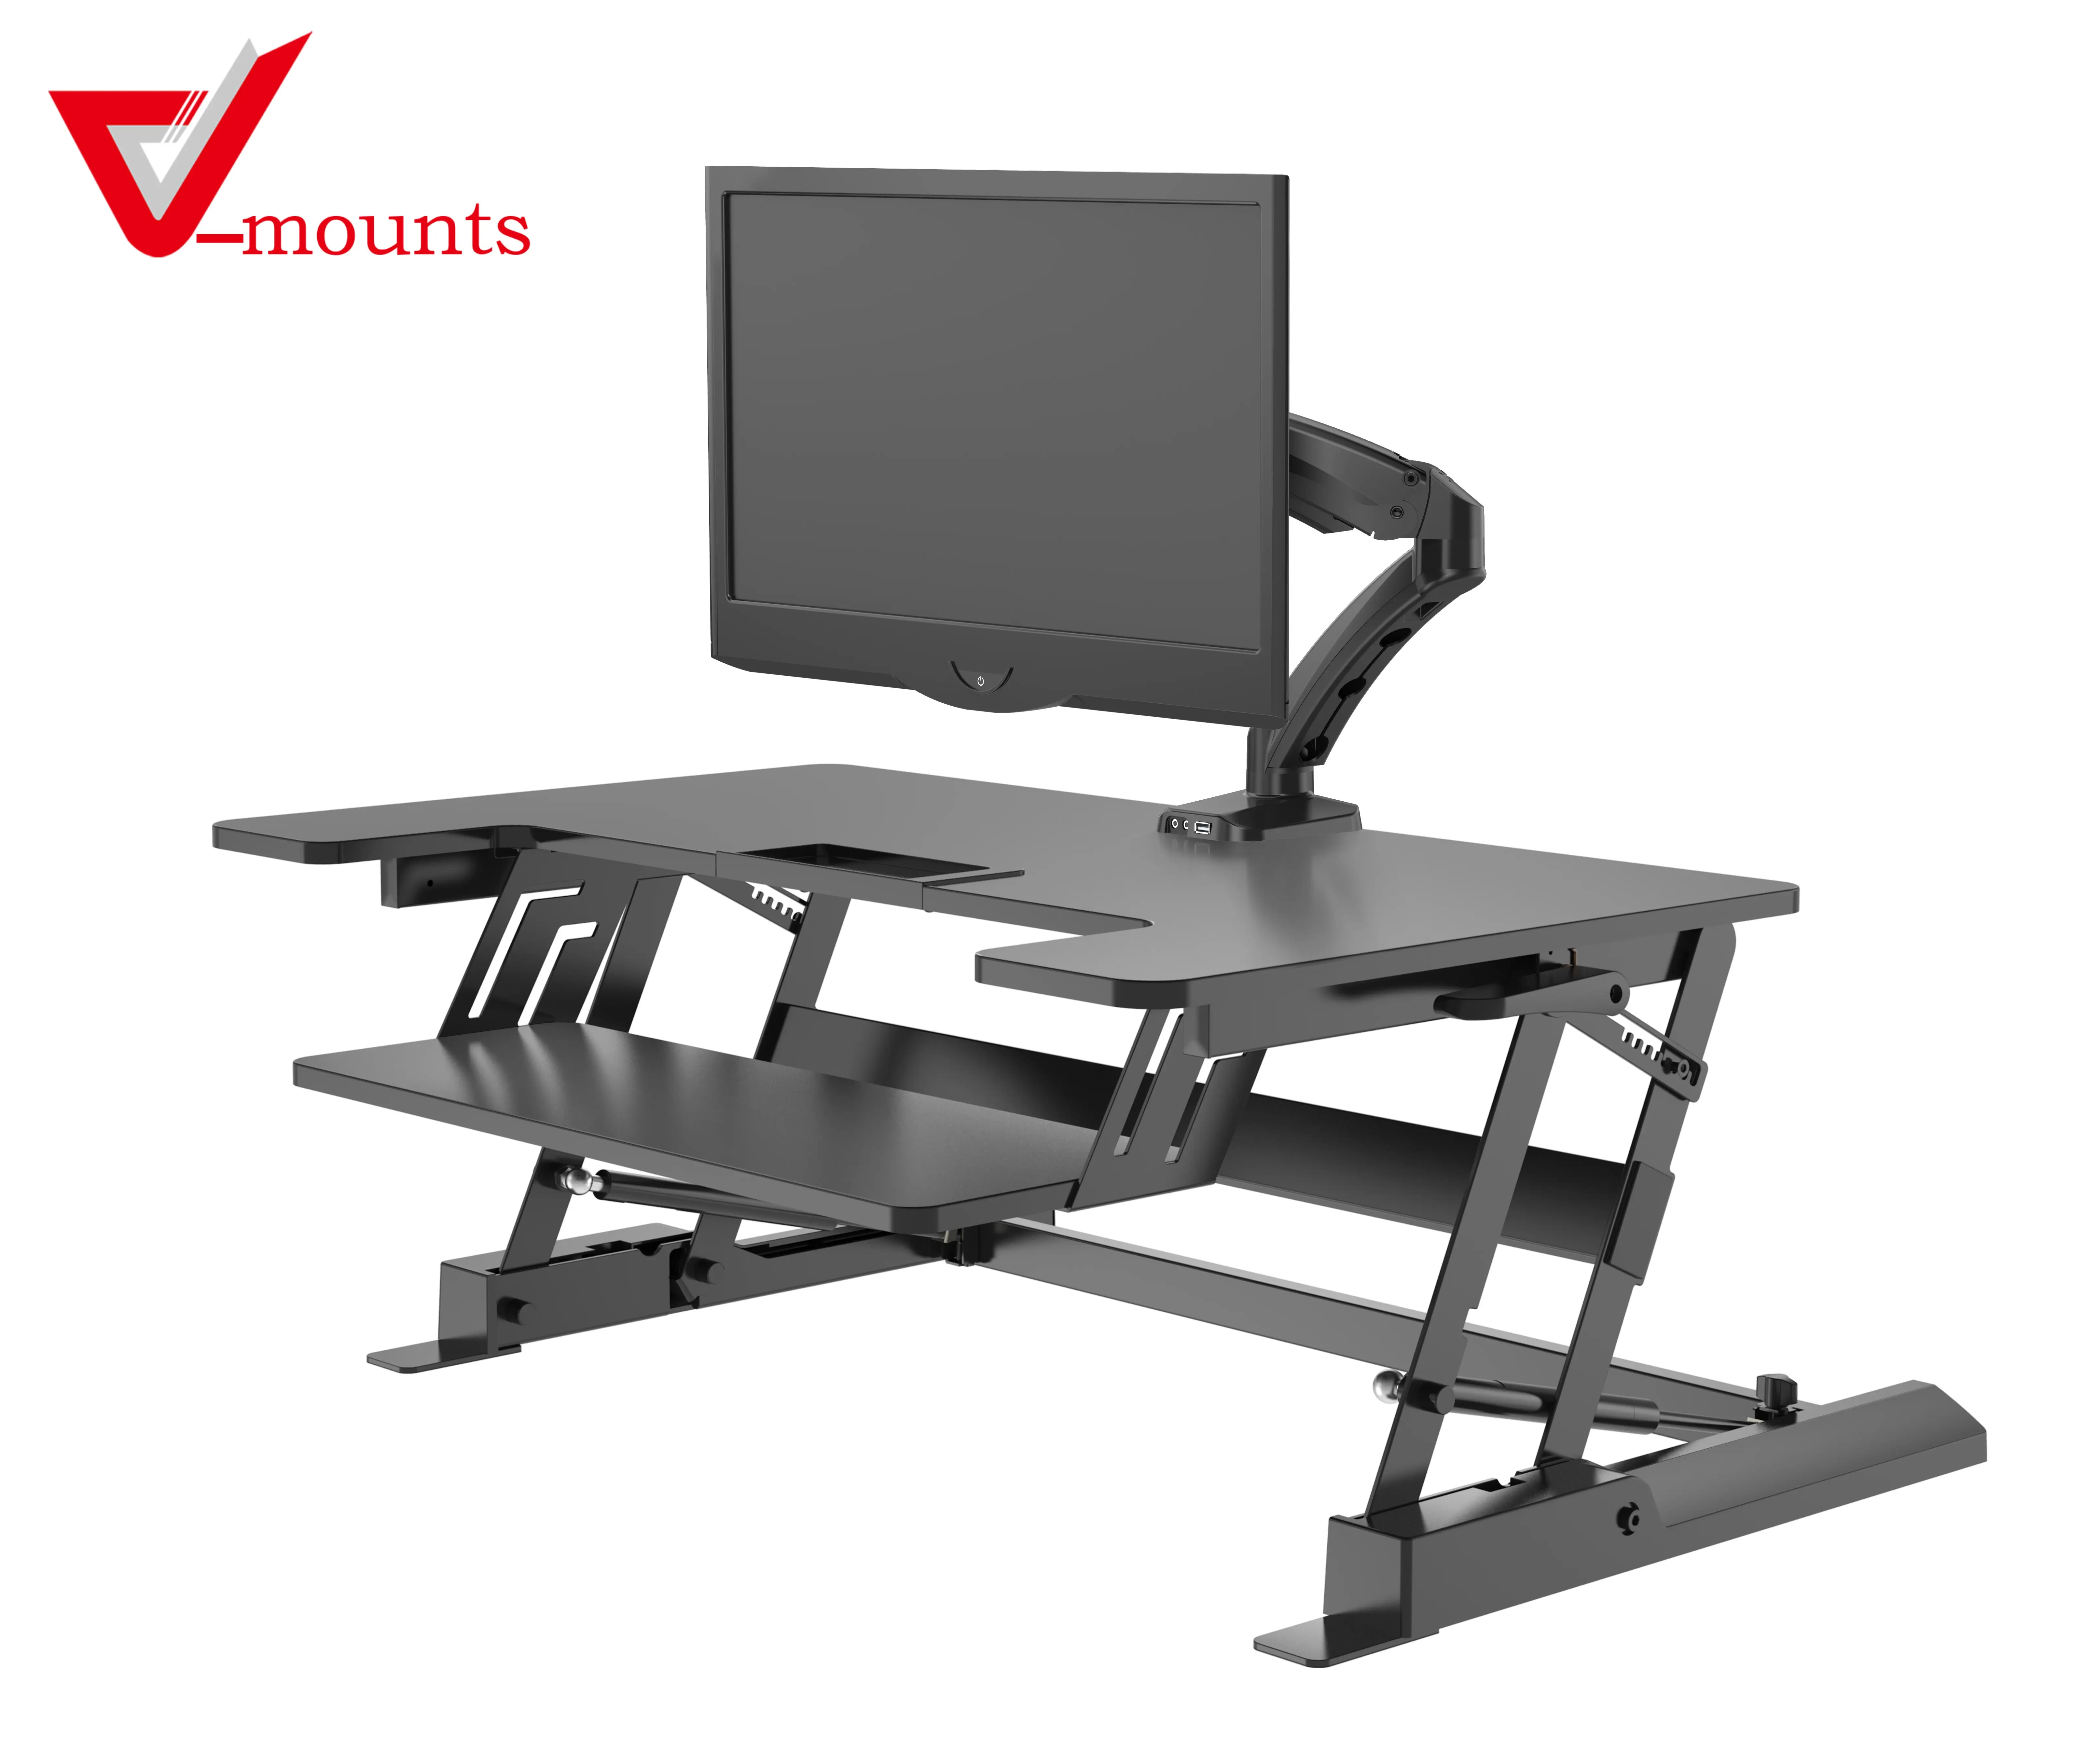 Suporte de mesa para estação de trabalho de computador v-mounts, funciona com monitor duplo e laptop VM-LD02